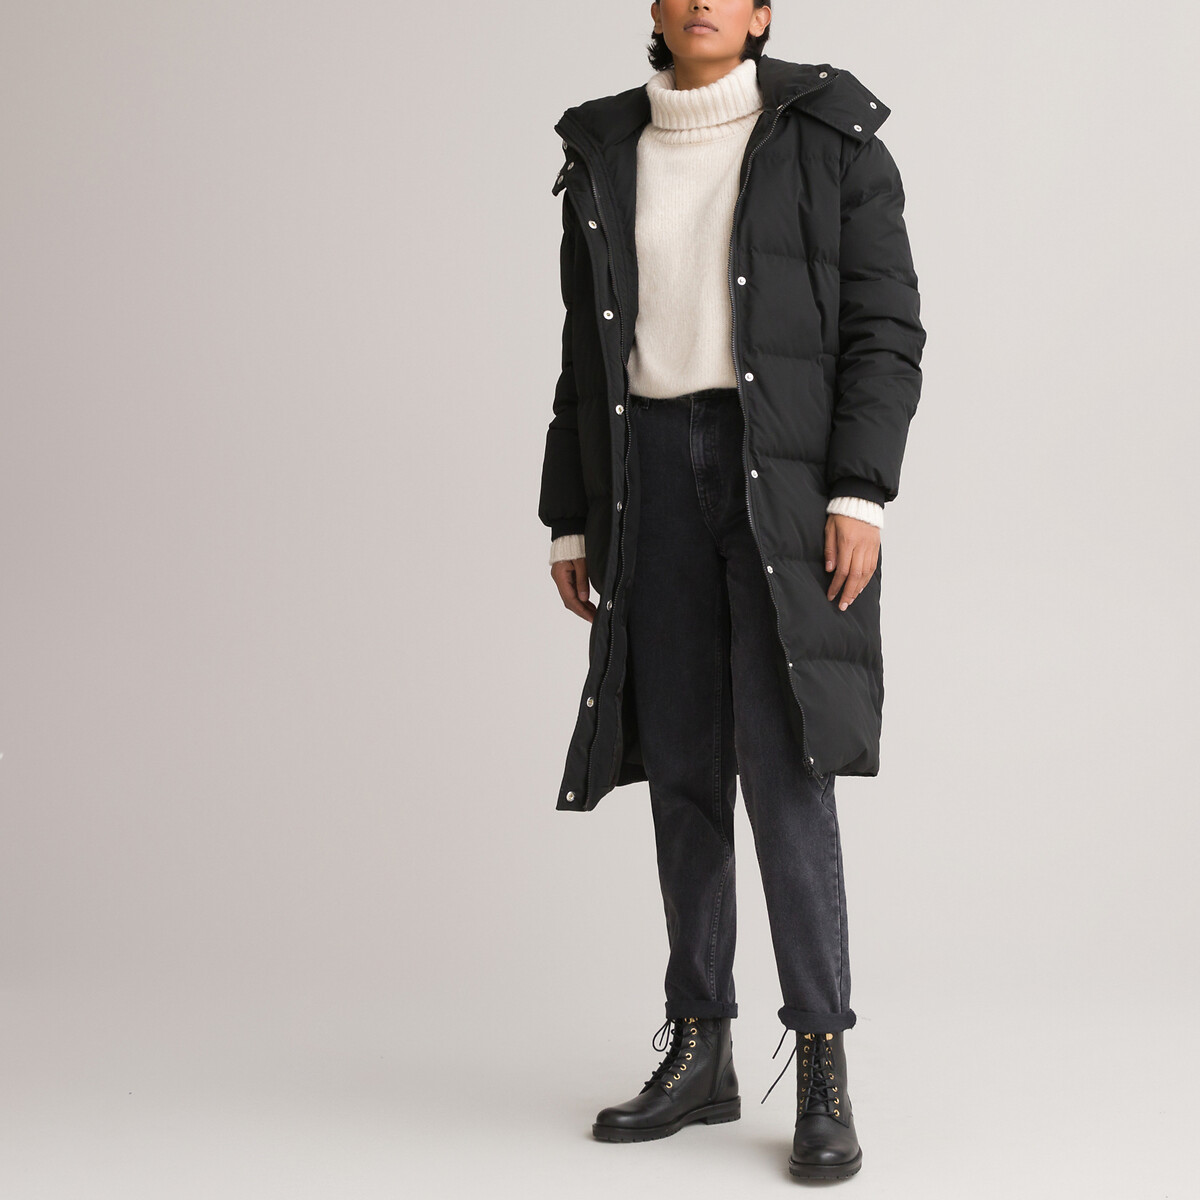 Куртка LaRedoute Стеганая длинная со съемным капюшоном 36 (FR) - 42 (RUS) черный, размер 36 (FR) - 42 (RUS)